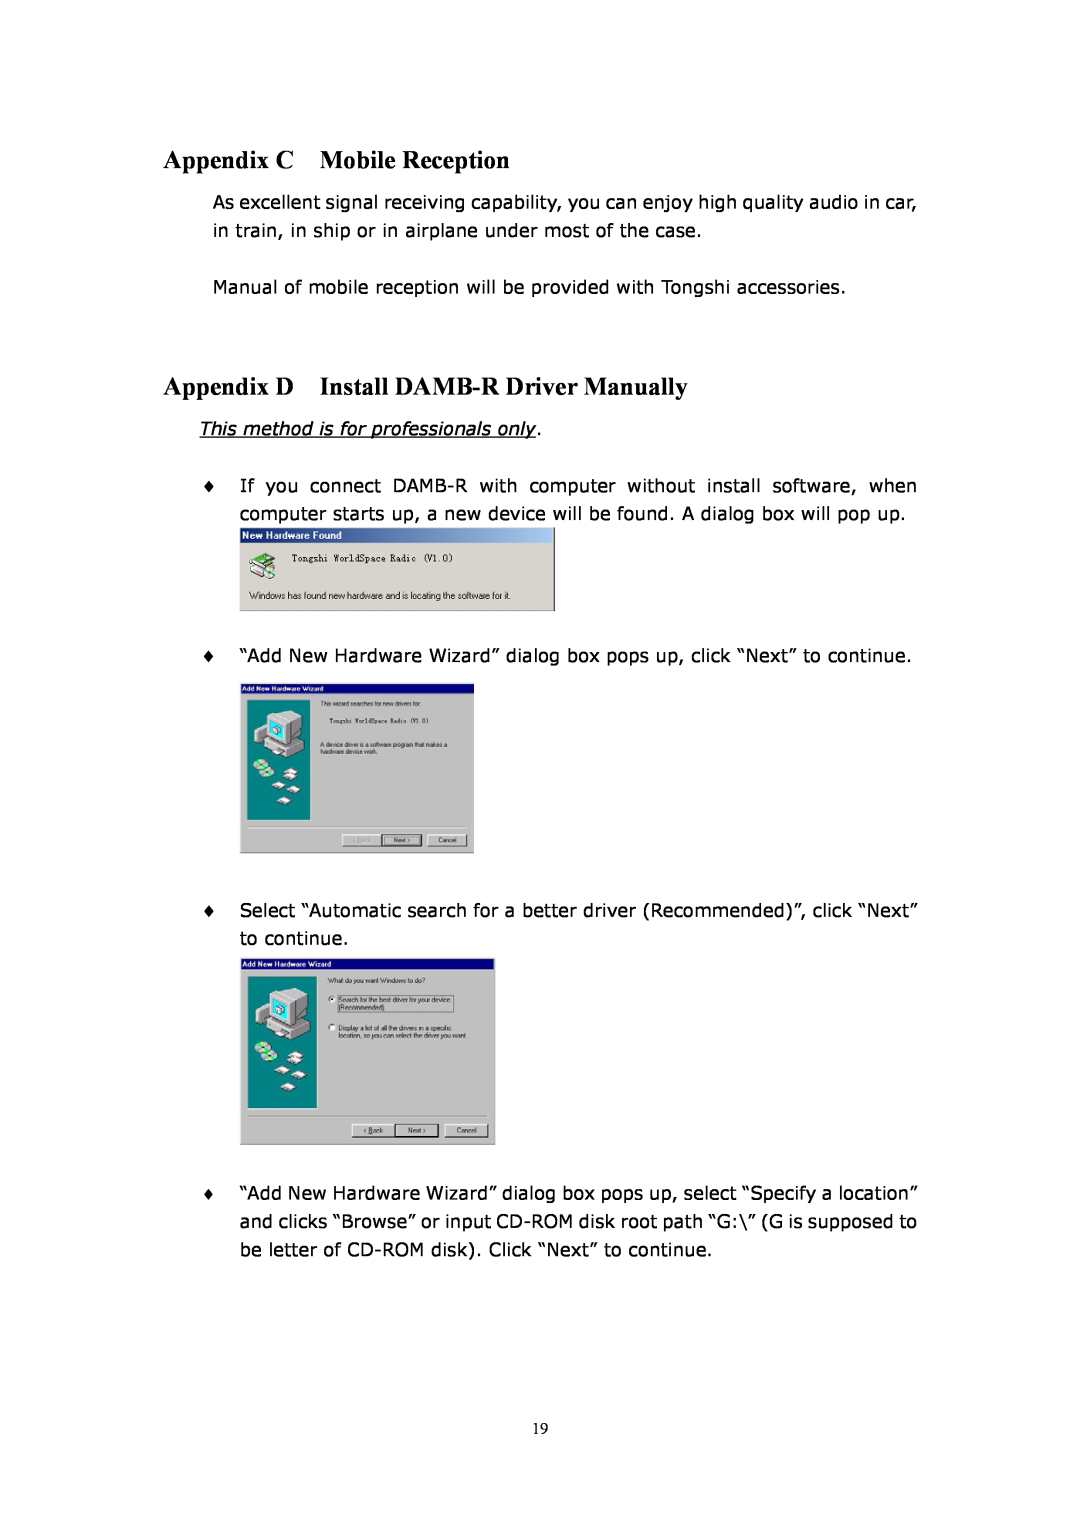 WorldSpace TONGSHI user manual Appendix C Mobile Reception, Appendix D Install DAMB-RDriver Manually 